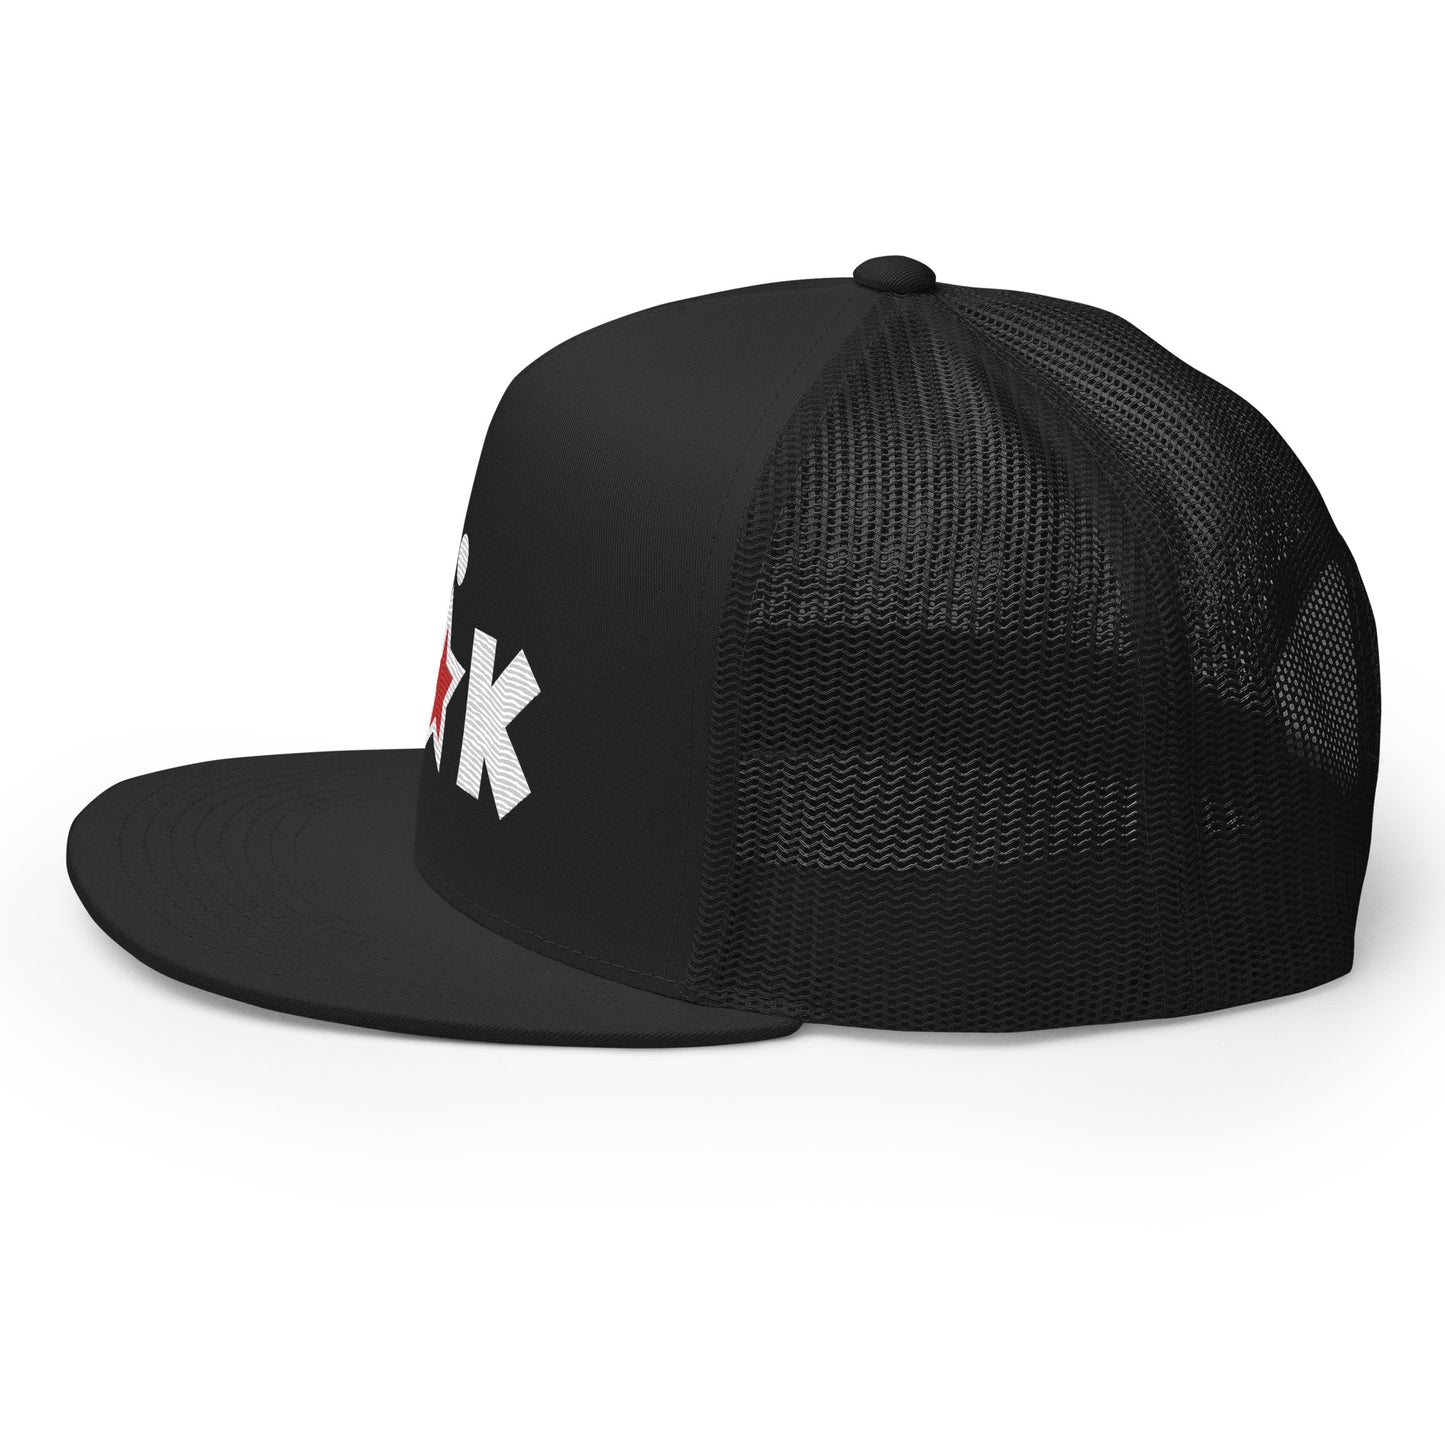 FCKSTR Hat / Trucker Cap III